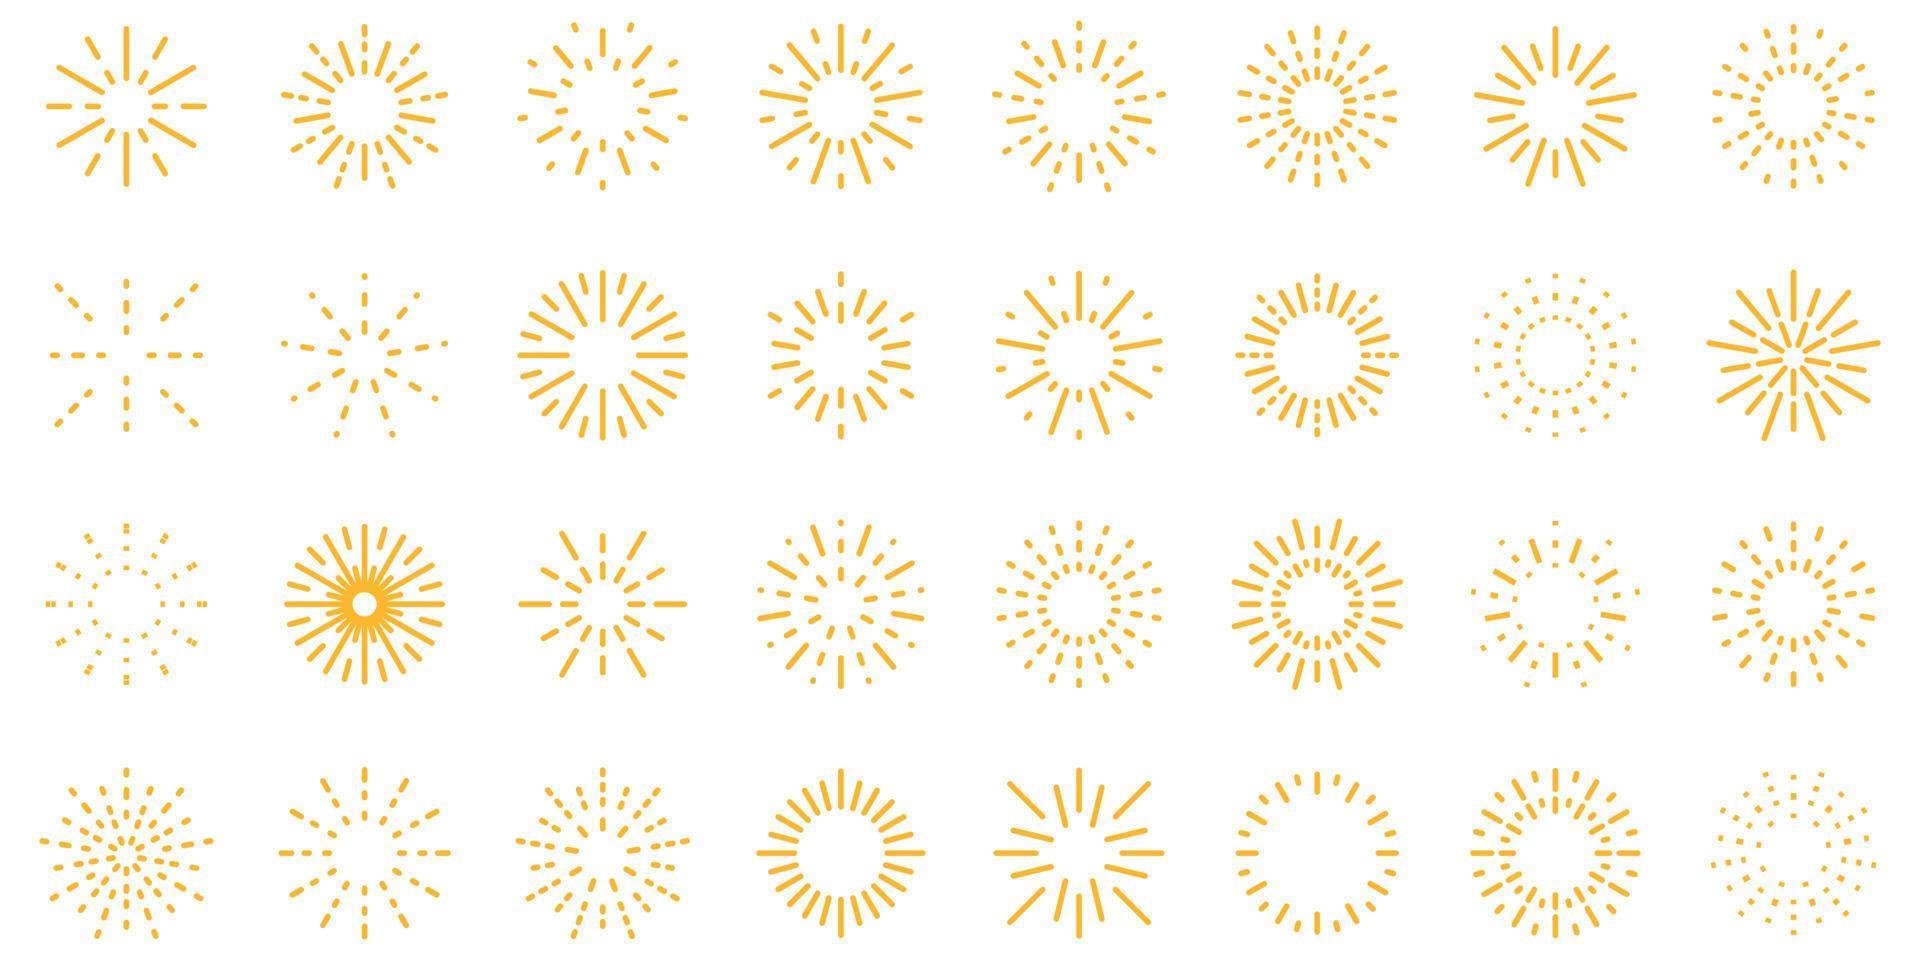 Feuerwerk-Icons setzen Vektor flach